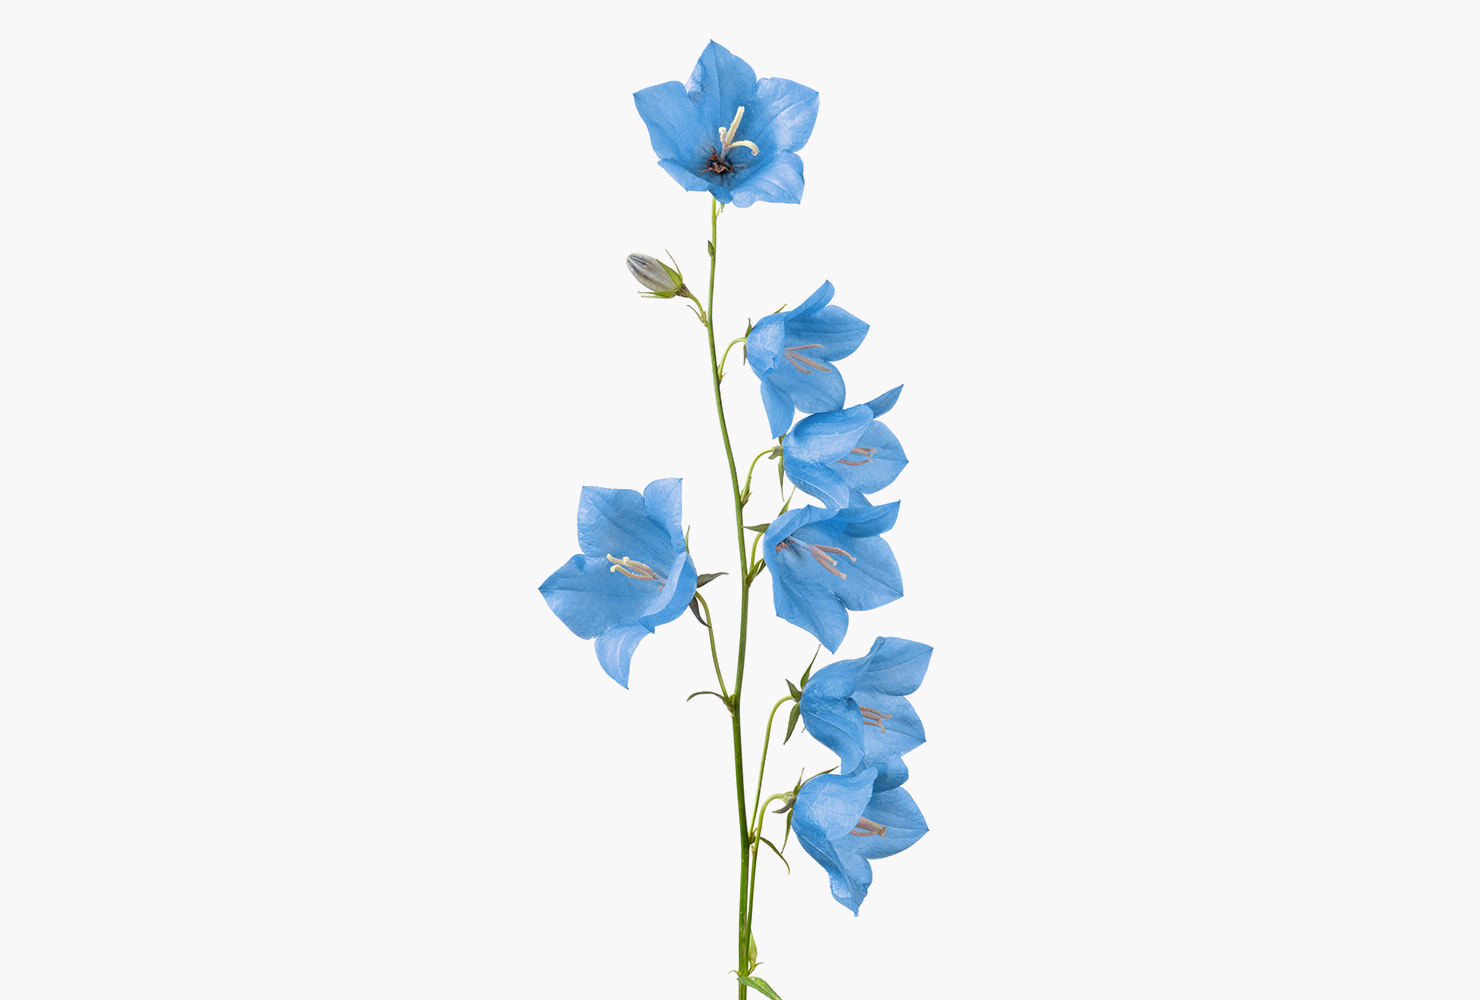 A blue bellflower.